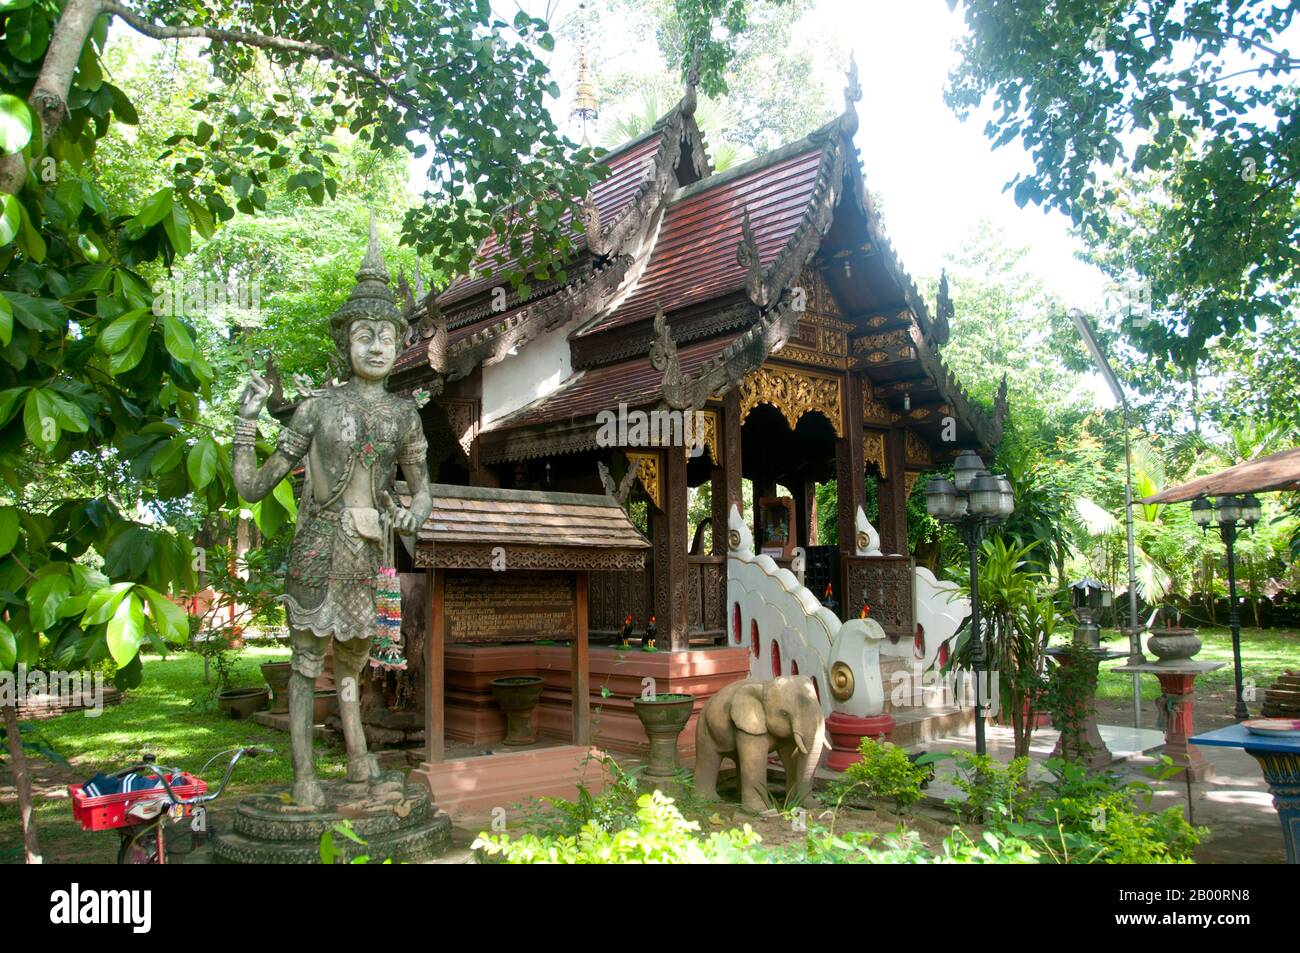 Thailand: Das Geisterhaus von König Mangrai, Wiang Kum kam, Chiang Mai. Im späten 13. Jahrhundert u.Z. aufgegeben und heute in Ruinen, war Wiang Kum kam einst die Hauptstadt der nördlichen Region Thailands und liegt südlich von Chiang Mai. Es wurde von König Mangrai zu einer Zeit im 13. Jahrhundert nach seinem Sieg über das Hariphunchai Königreich des modernen Lamphun gebaut. Doch nachdem die Stadt mehrere Male überflutet hatte, entschied sich Mangrai, die Hauptstadt seines Königreichs umzusiedeln und verlegte sie weiter nördlich am Fluss Ping zu einem Ort, der jetzt die Stadt Chiang Mai ist. Stockfoto